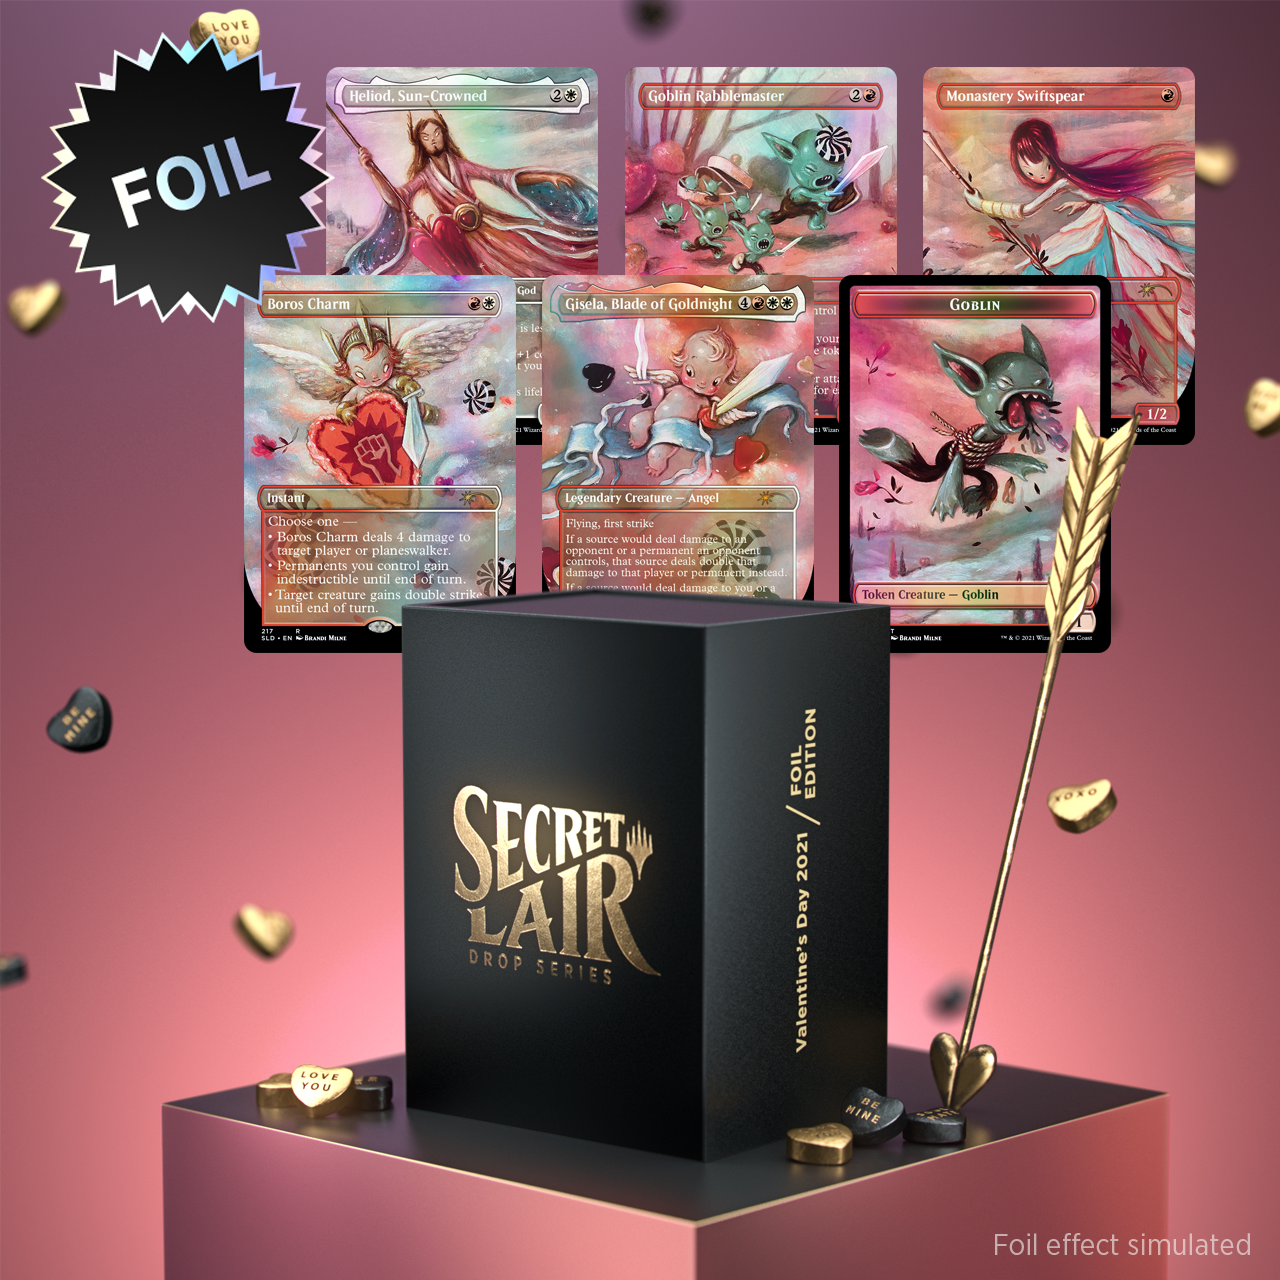 Secret Lair Drop Series: Valentine's day 2021 Foil Edition